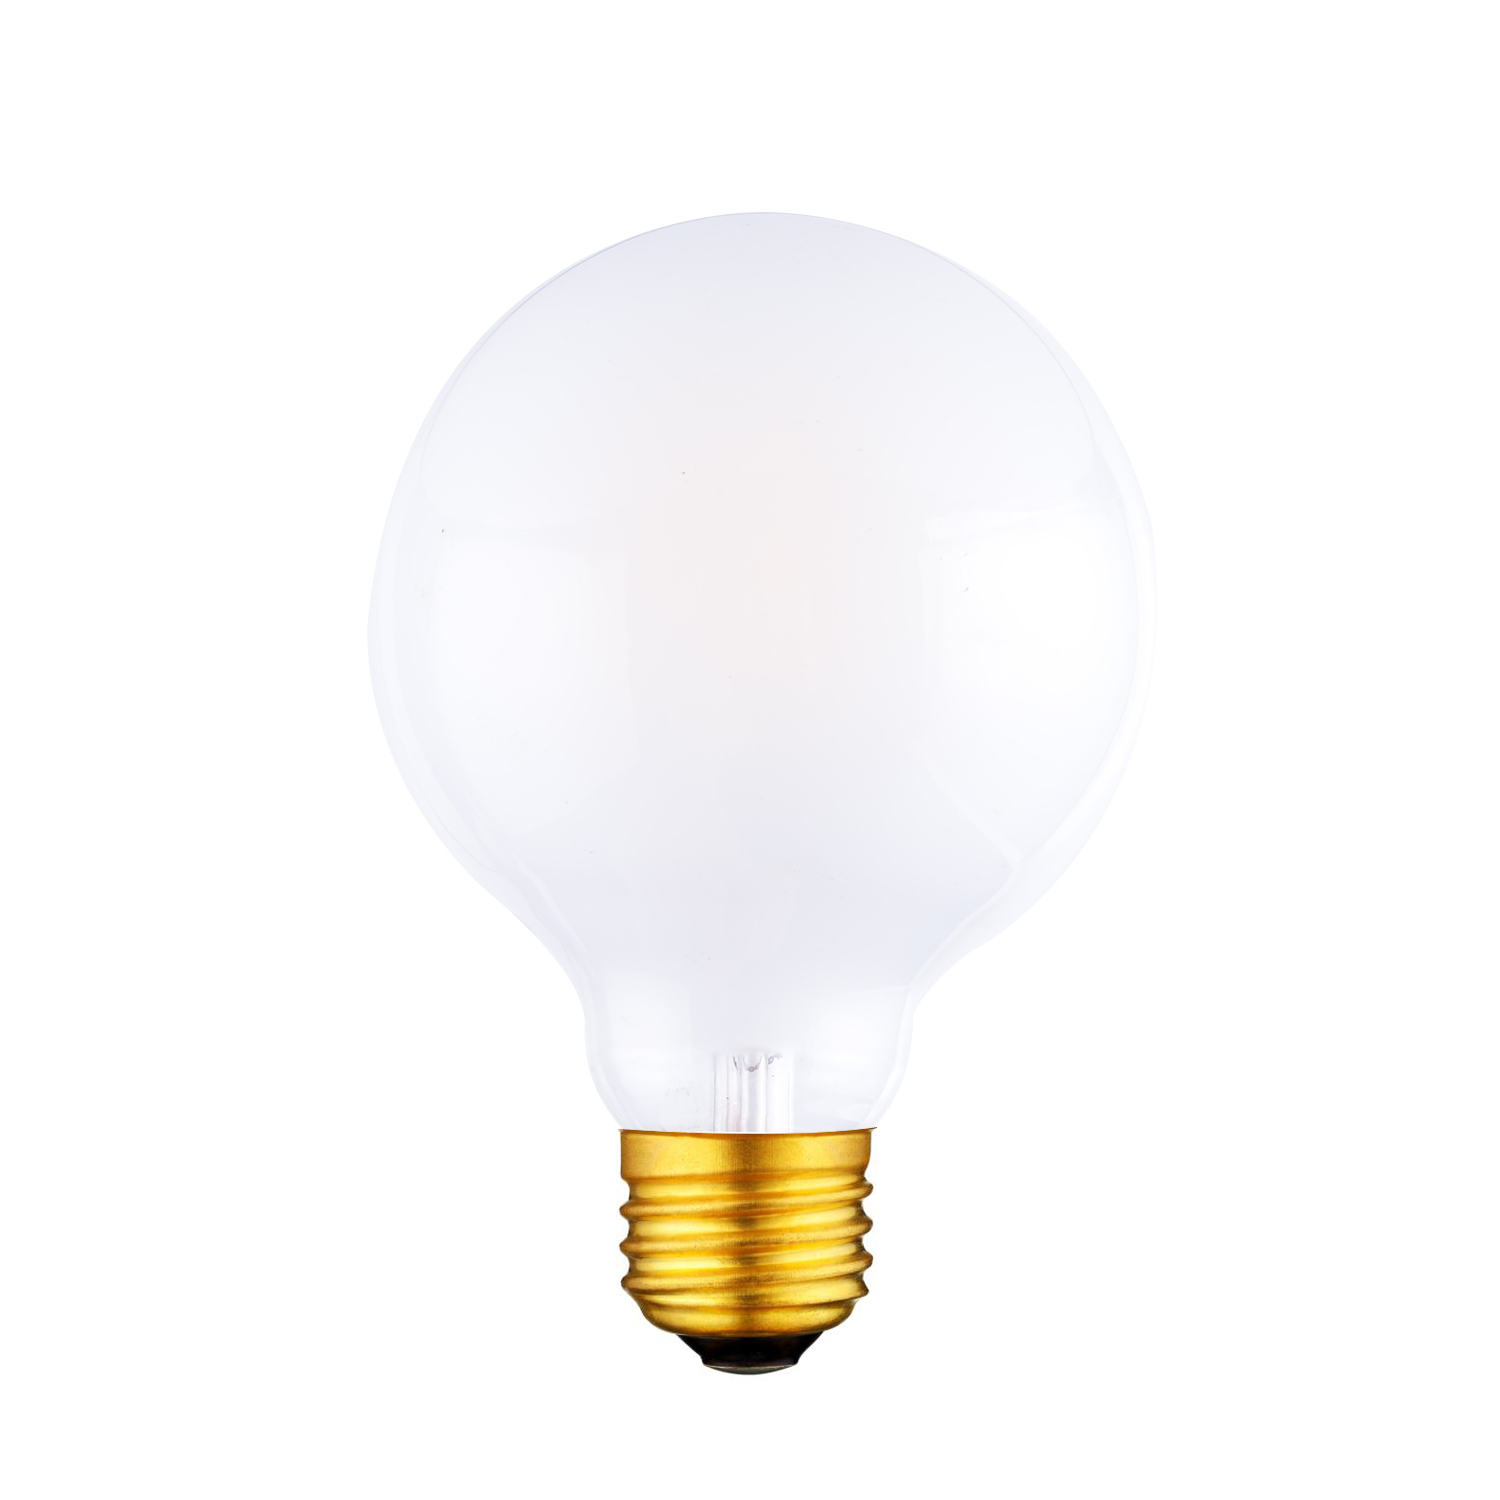 G80 E26 LED vanity light bulbs